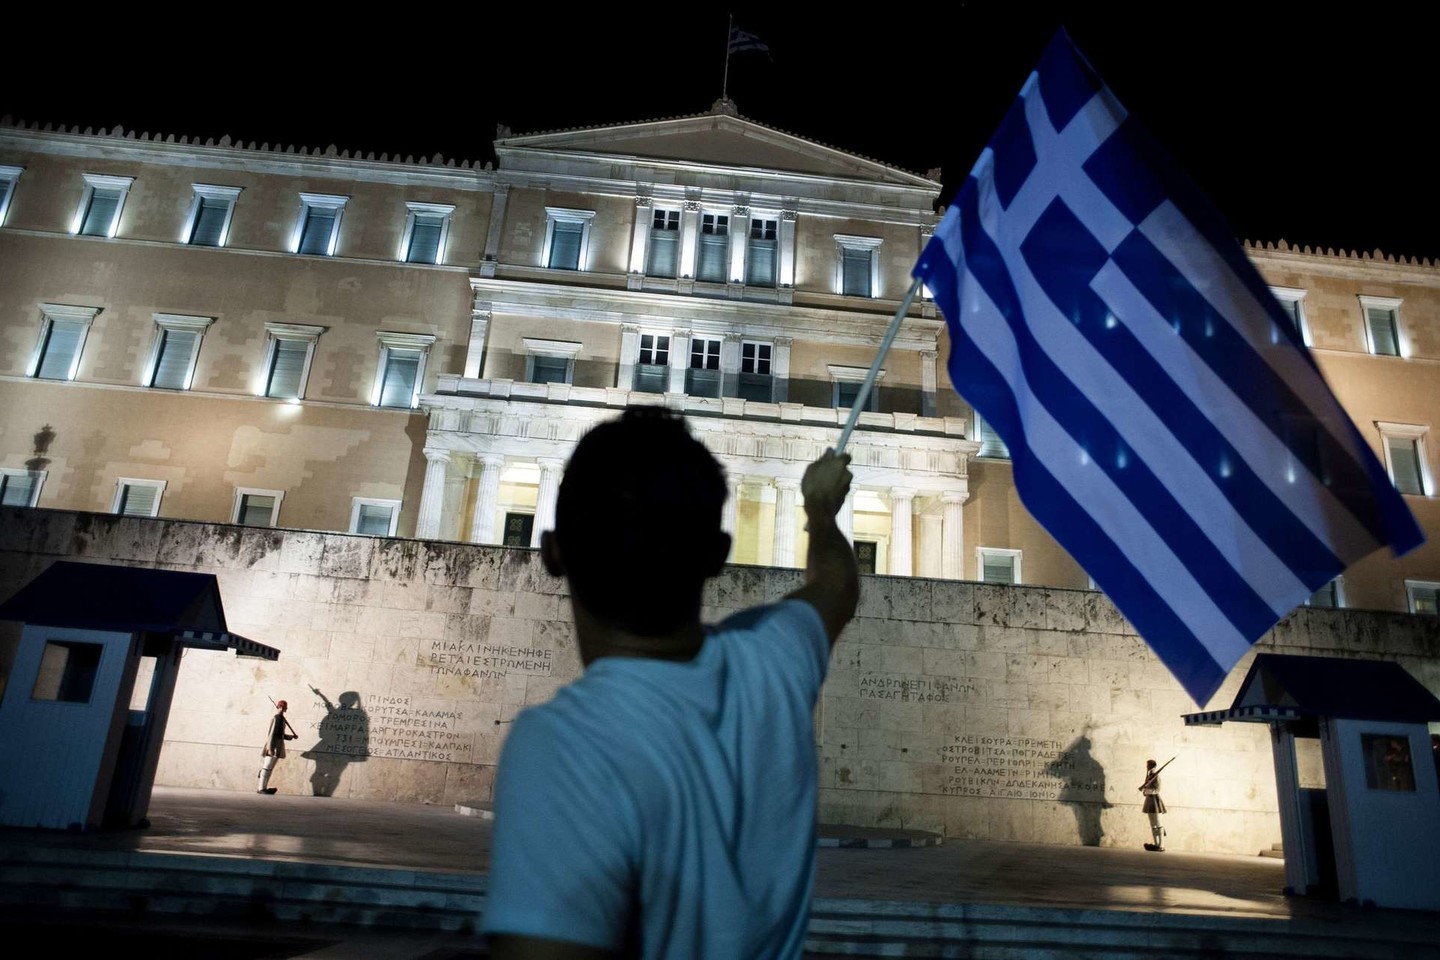 Analitikai spėja, kad graikai negaus geresnio pasiūlymo iš kreditorių, o tada apkaltins juos nesąžiningu elgesiu.<br>AFP/“Scanpix“ nuotr.